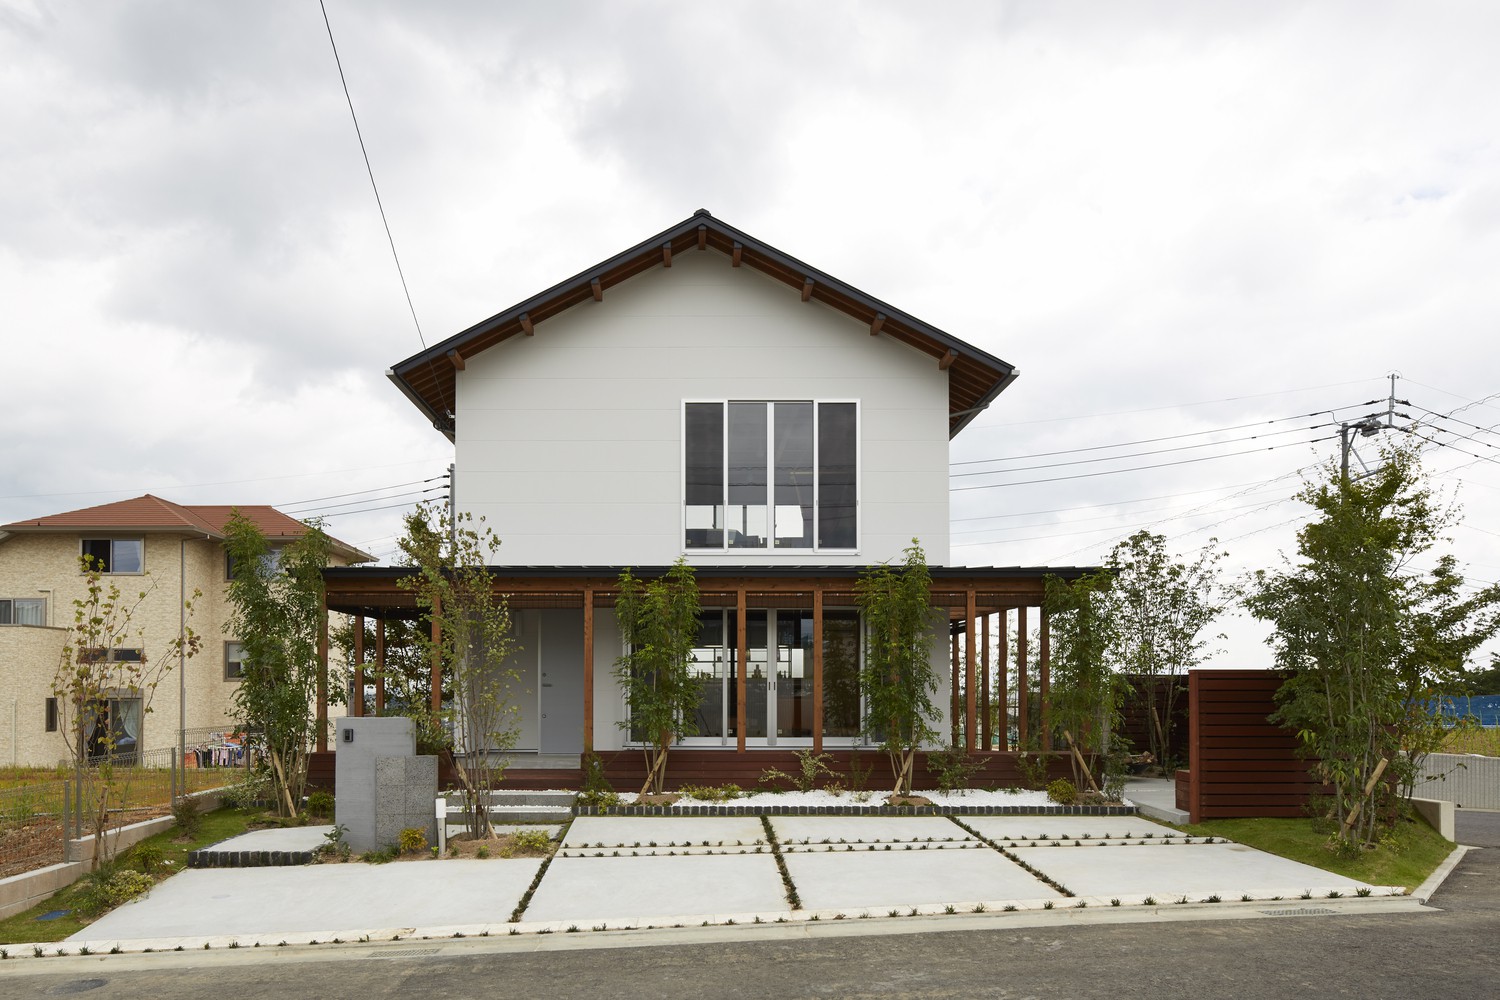 Hình ảnh toàn cảnh ngôi nhà 2 tầng có cấu trúc dạng khung đơn giản, phía trước trồng cây xanh